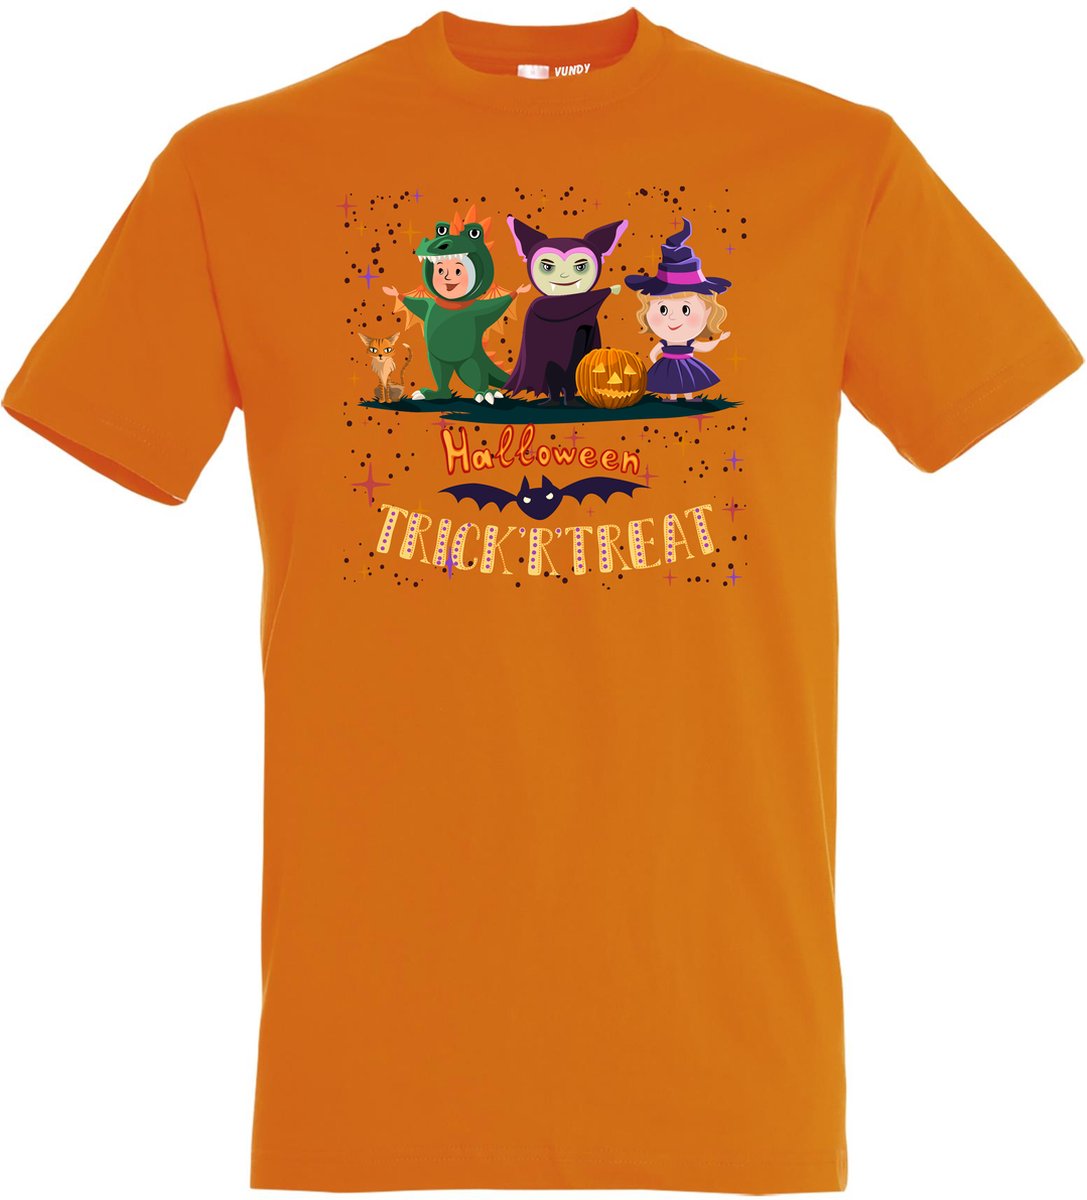 T-shirt Halloween TrickrTreat | Halloween kostuum kind dames heren | verkleedkleren meisje jongen | Oranje | maat XXL